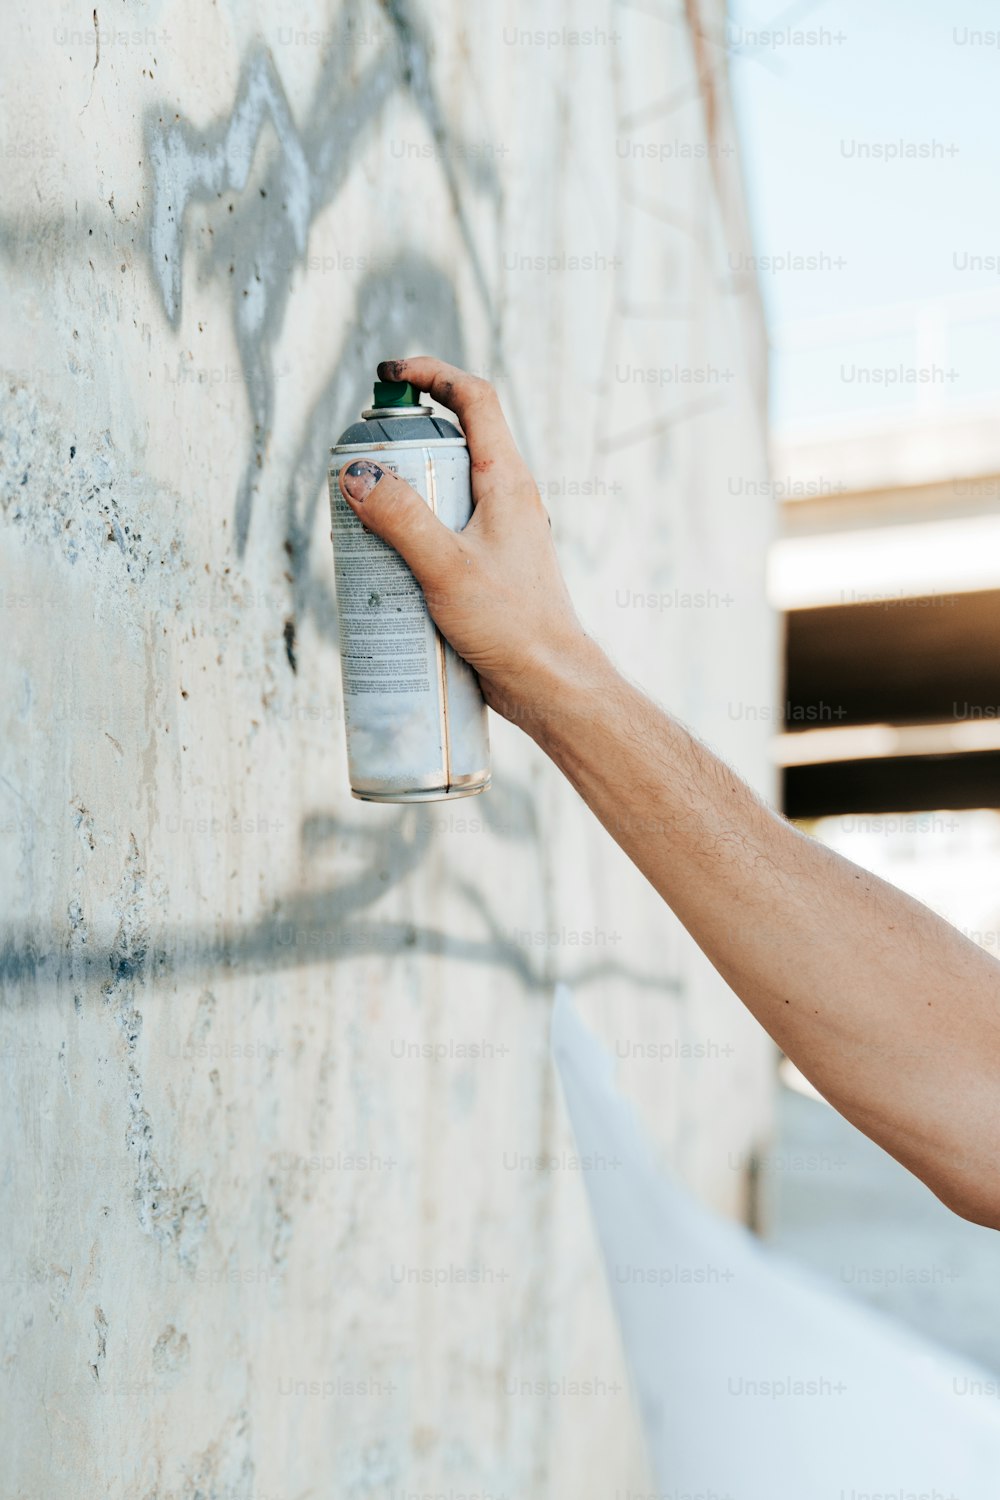 Eine Person, die eine Wand mit Graffiti besprüht